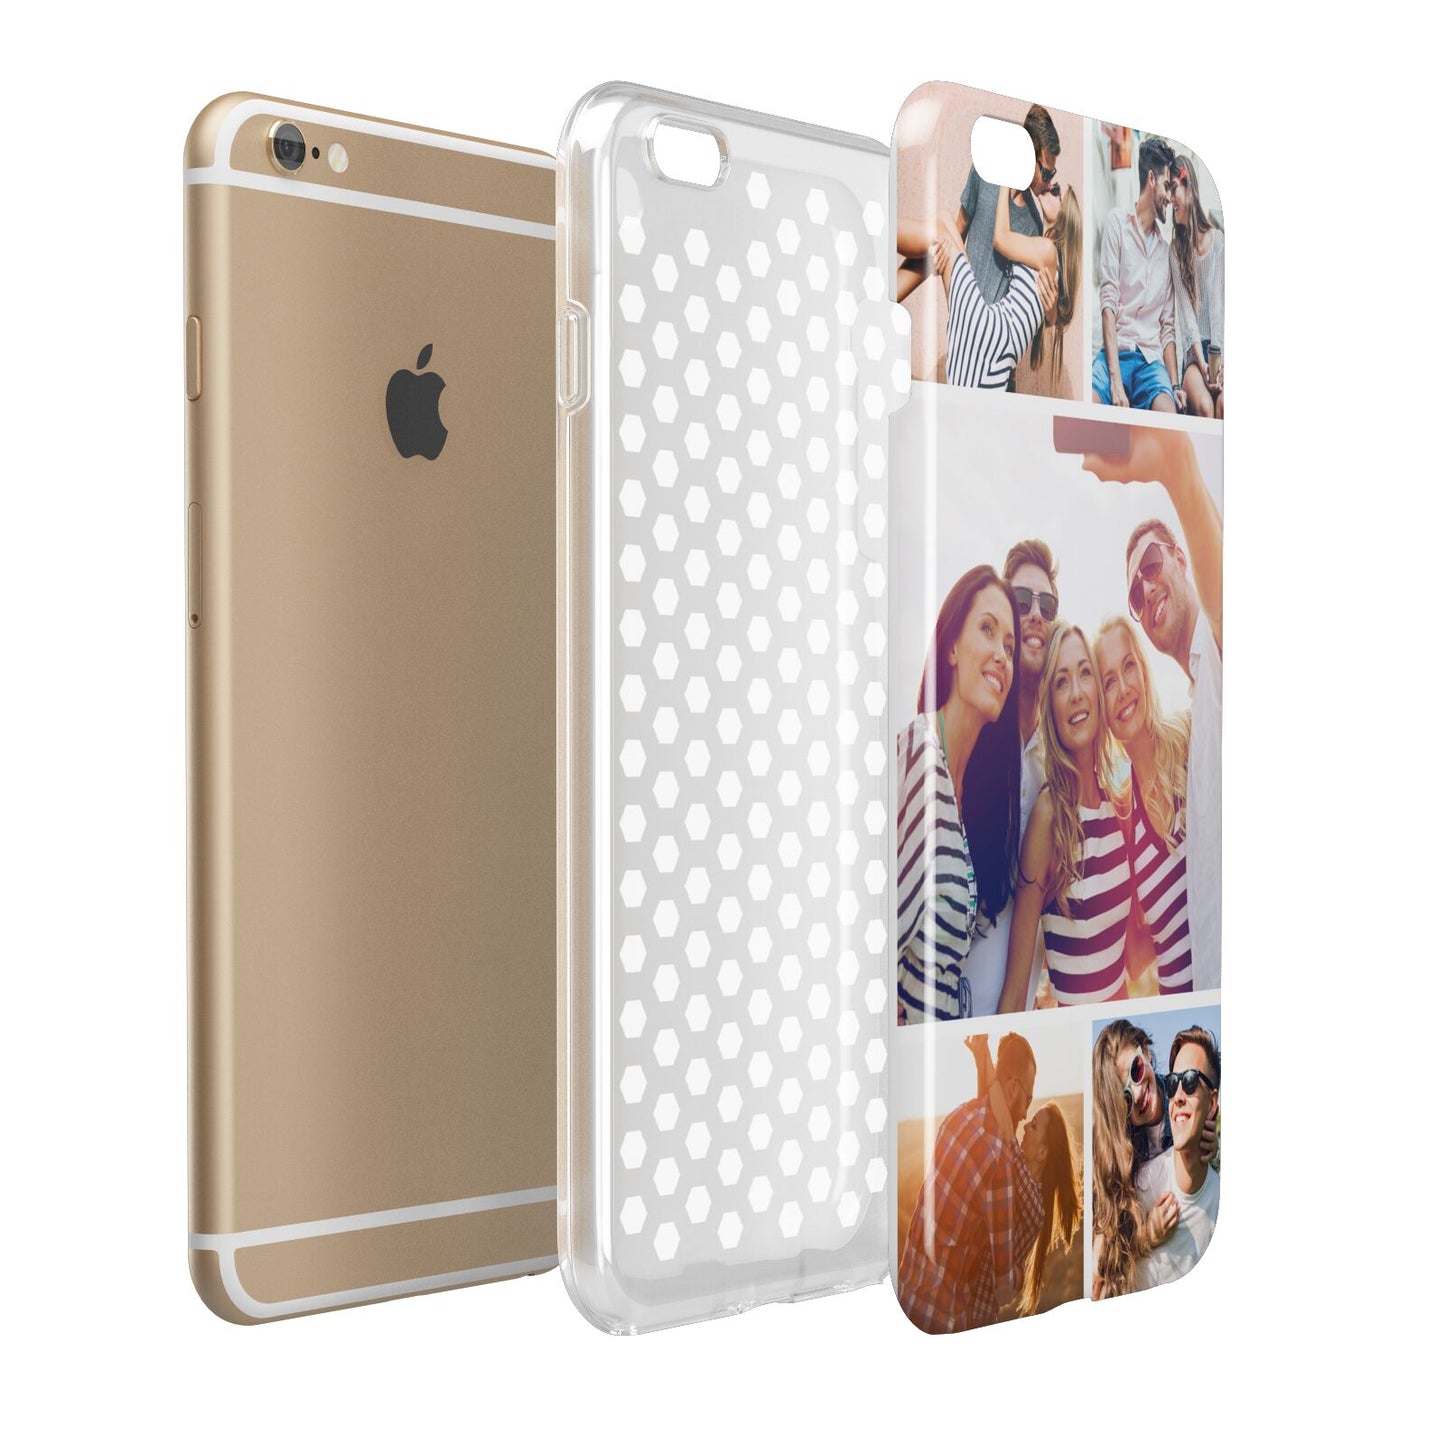 Tile Photo Collage Upload Apple iPhone 6 Plus 3D Tough Case Expand Detail Image